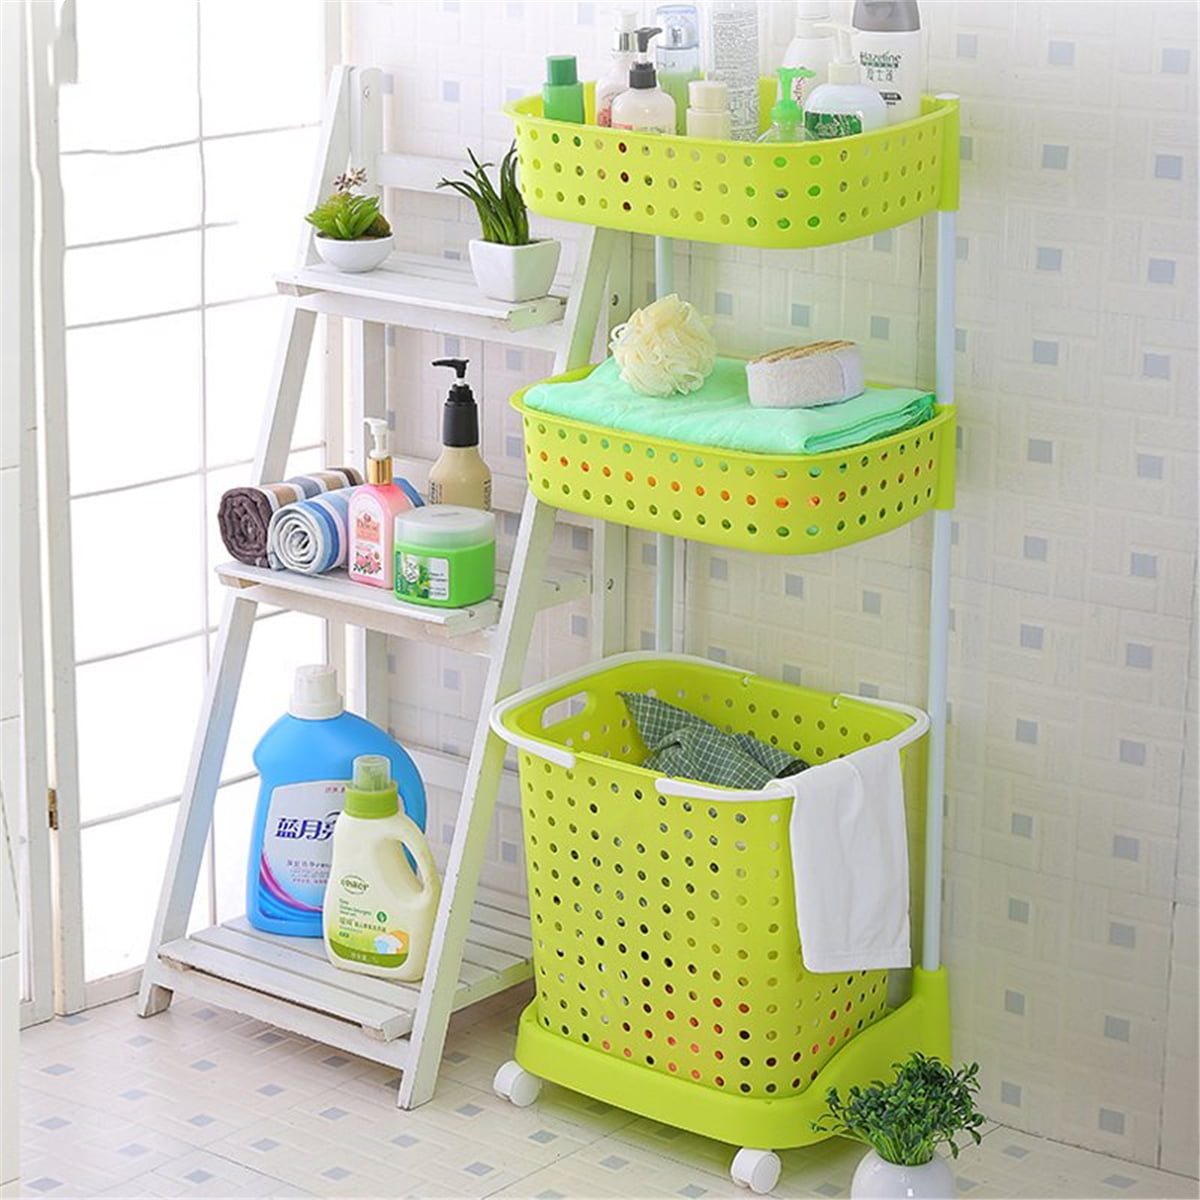 Bathroom Laundry Clothes Basket Bin Hamper Mobile Rack 3 Tier Storage Cart Pink 